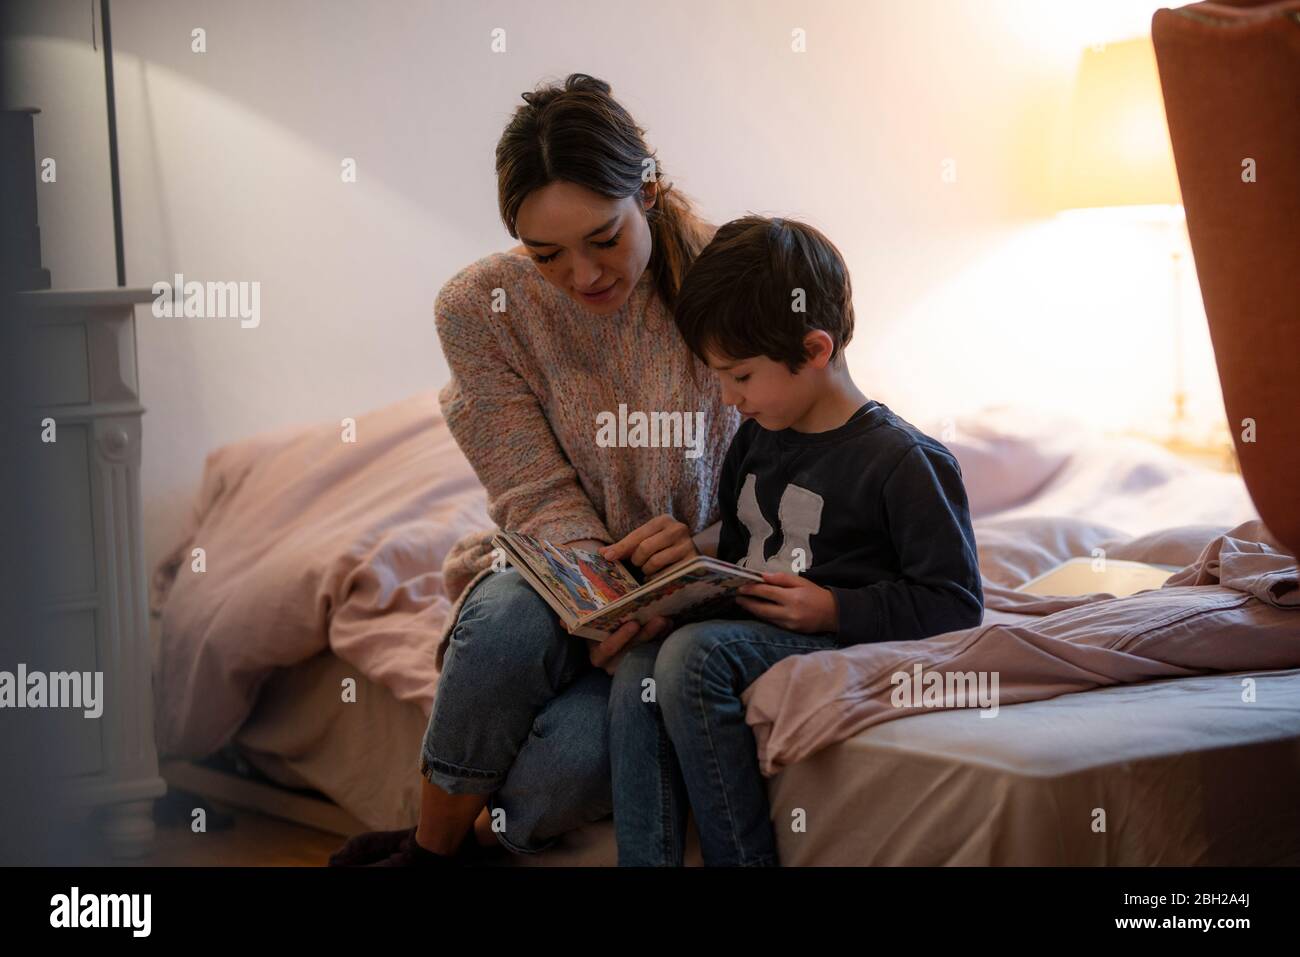 Mutter und kleiner Sohn sitzen zusammen auf dem Bett und schauen sich Bilderbuch an Stockfoto